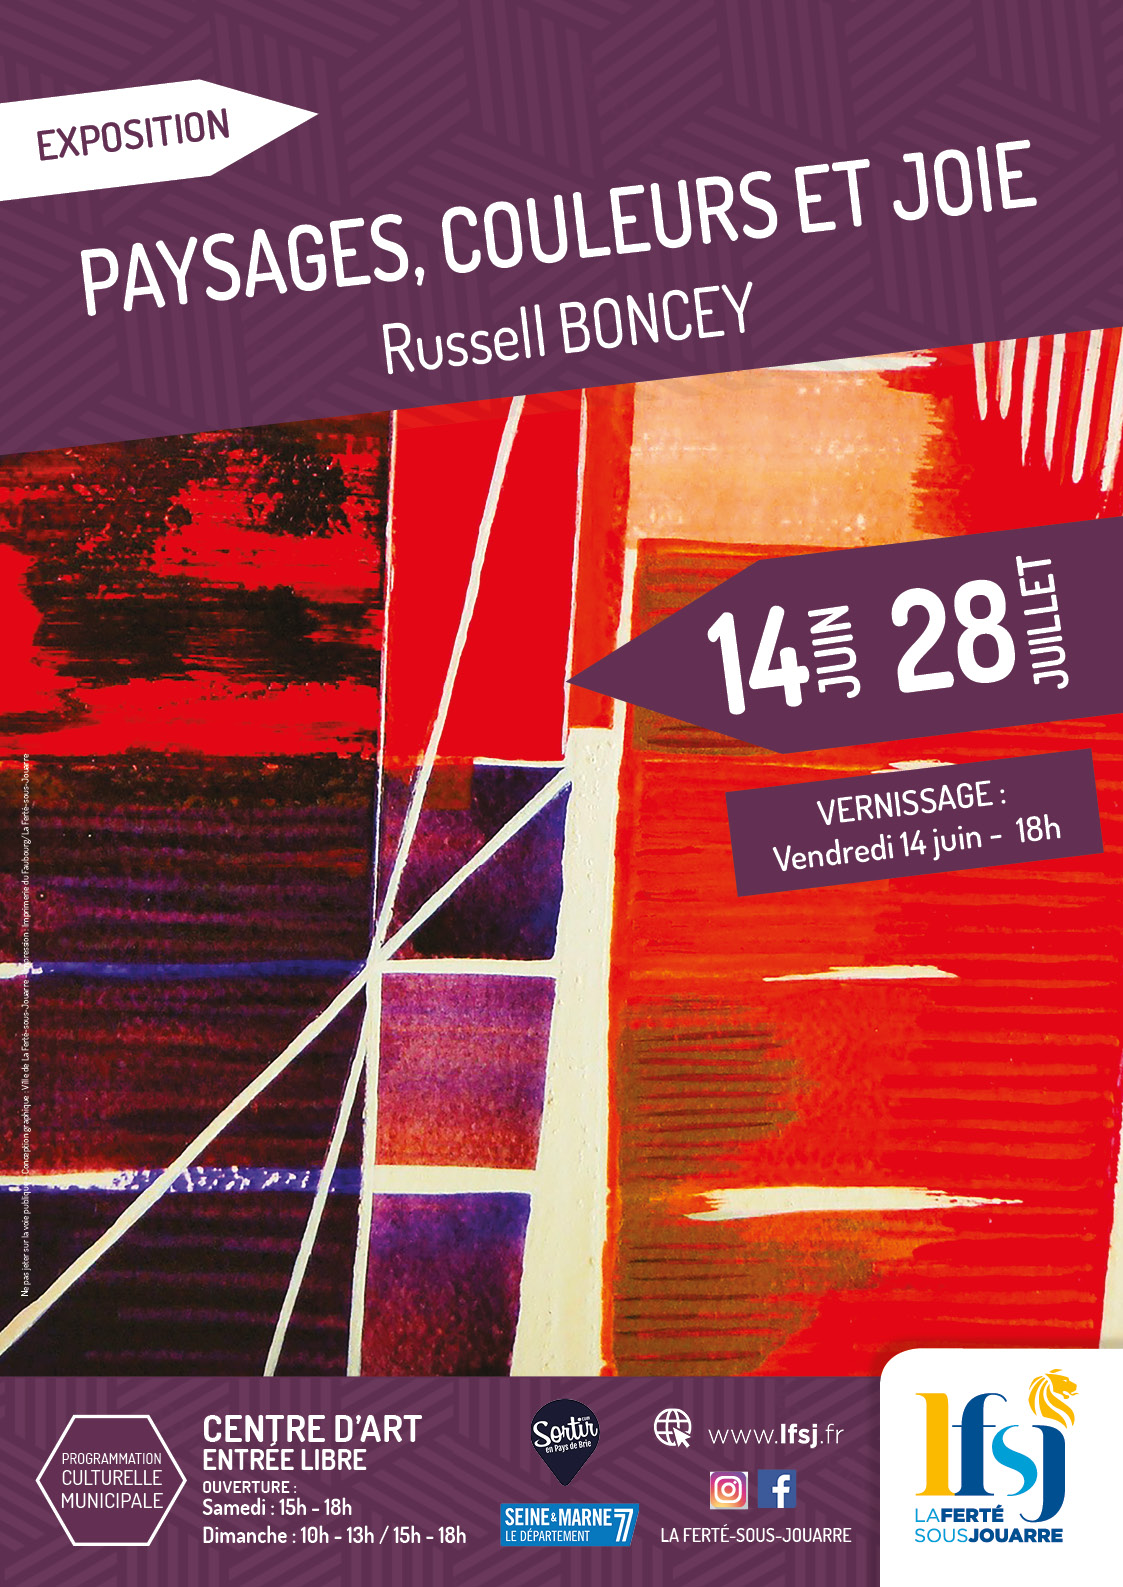 Paysages, couleurs et joie Une exposition de peintures de Russell Boncey